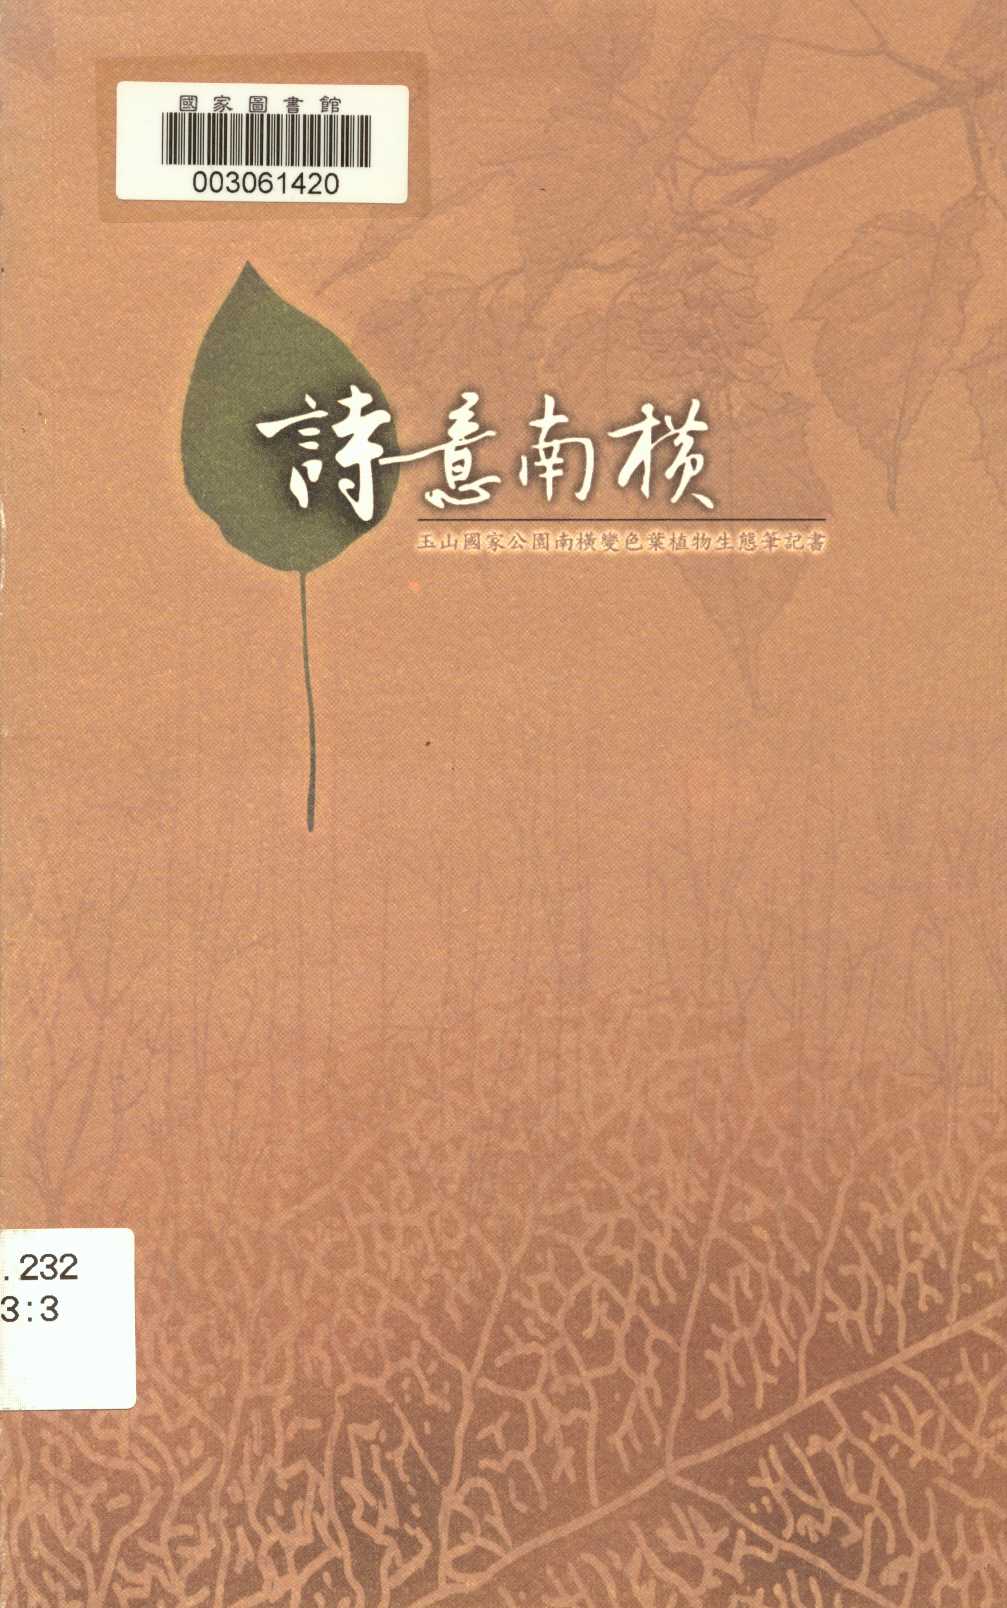 詩意南橫-變色葉植物生態筆記書